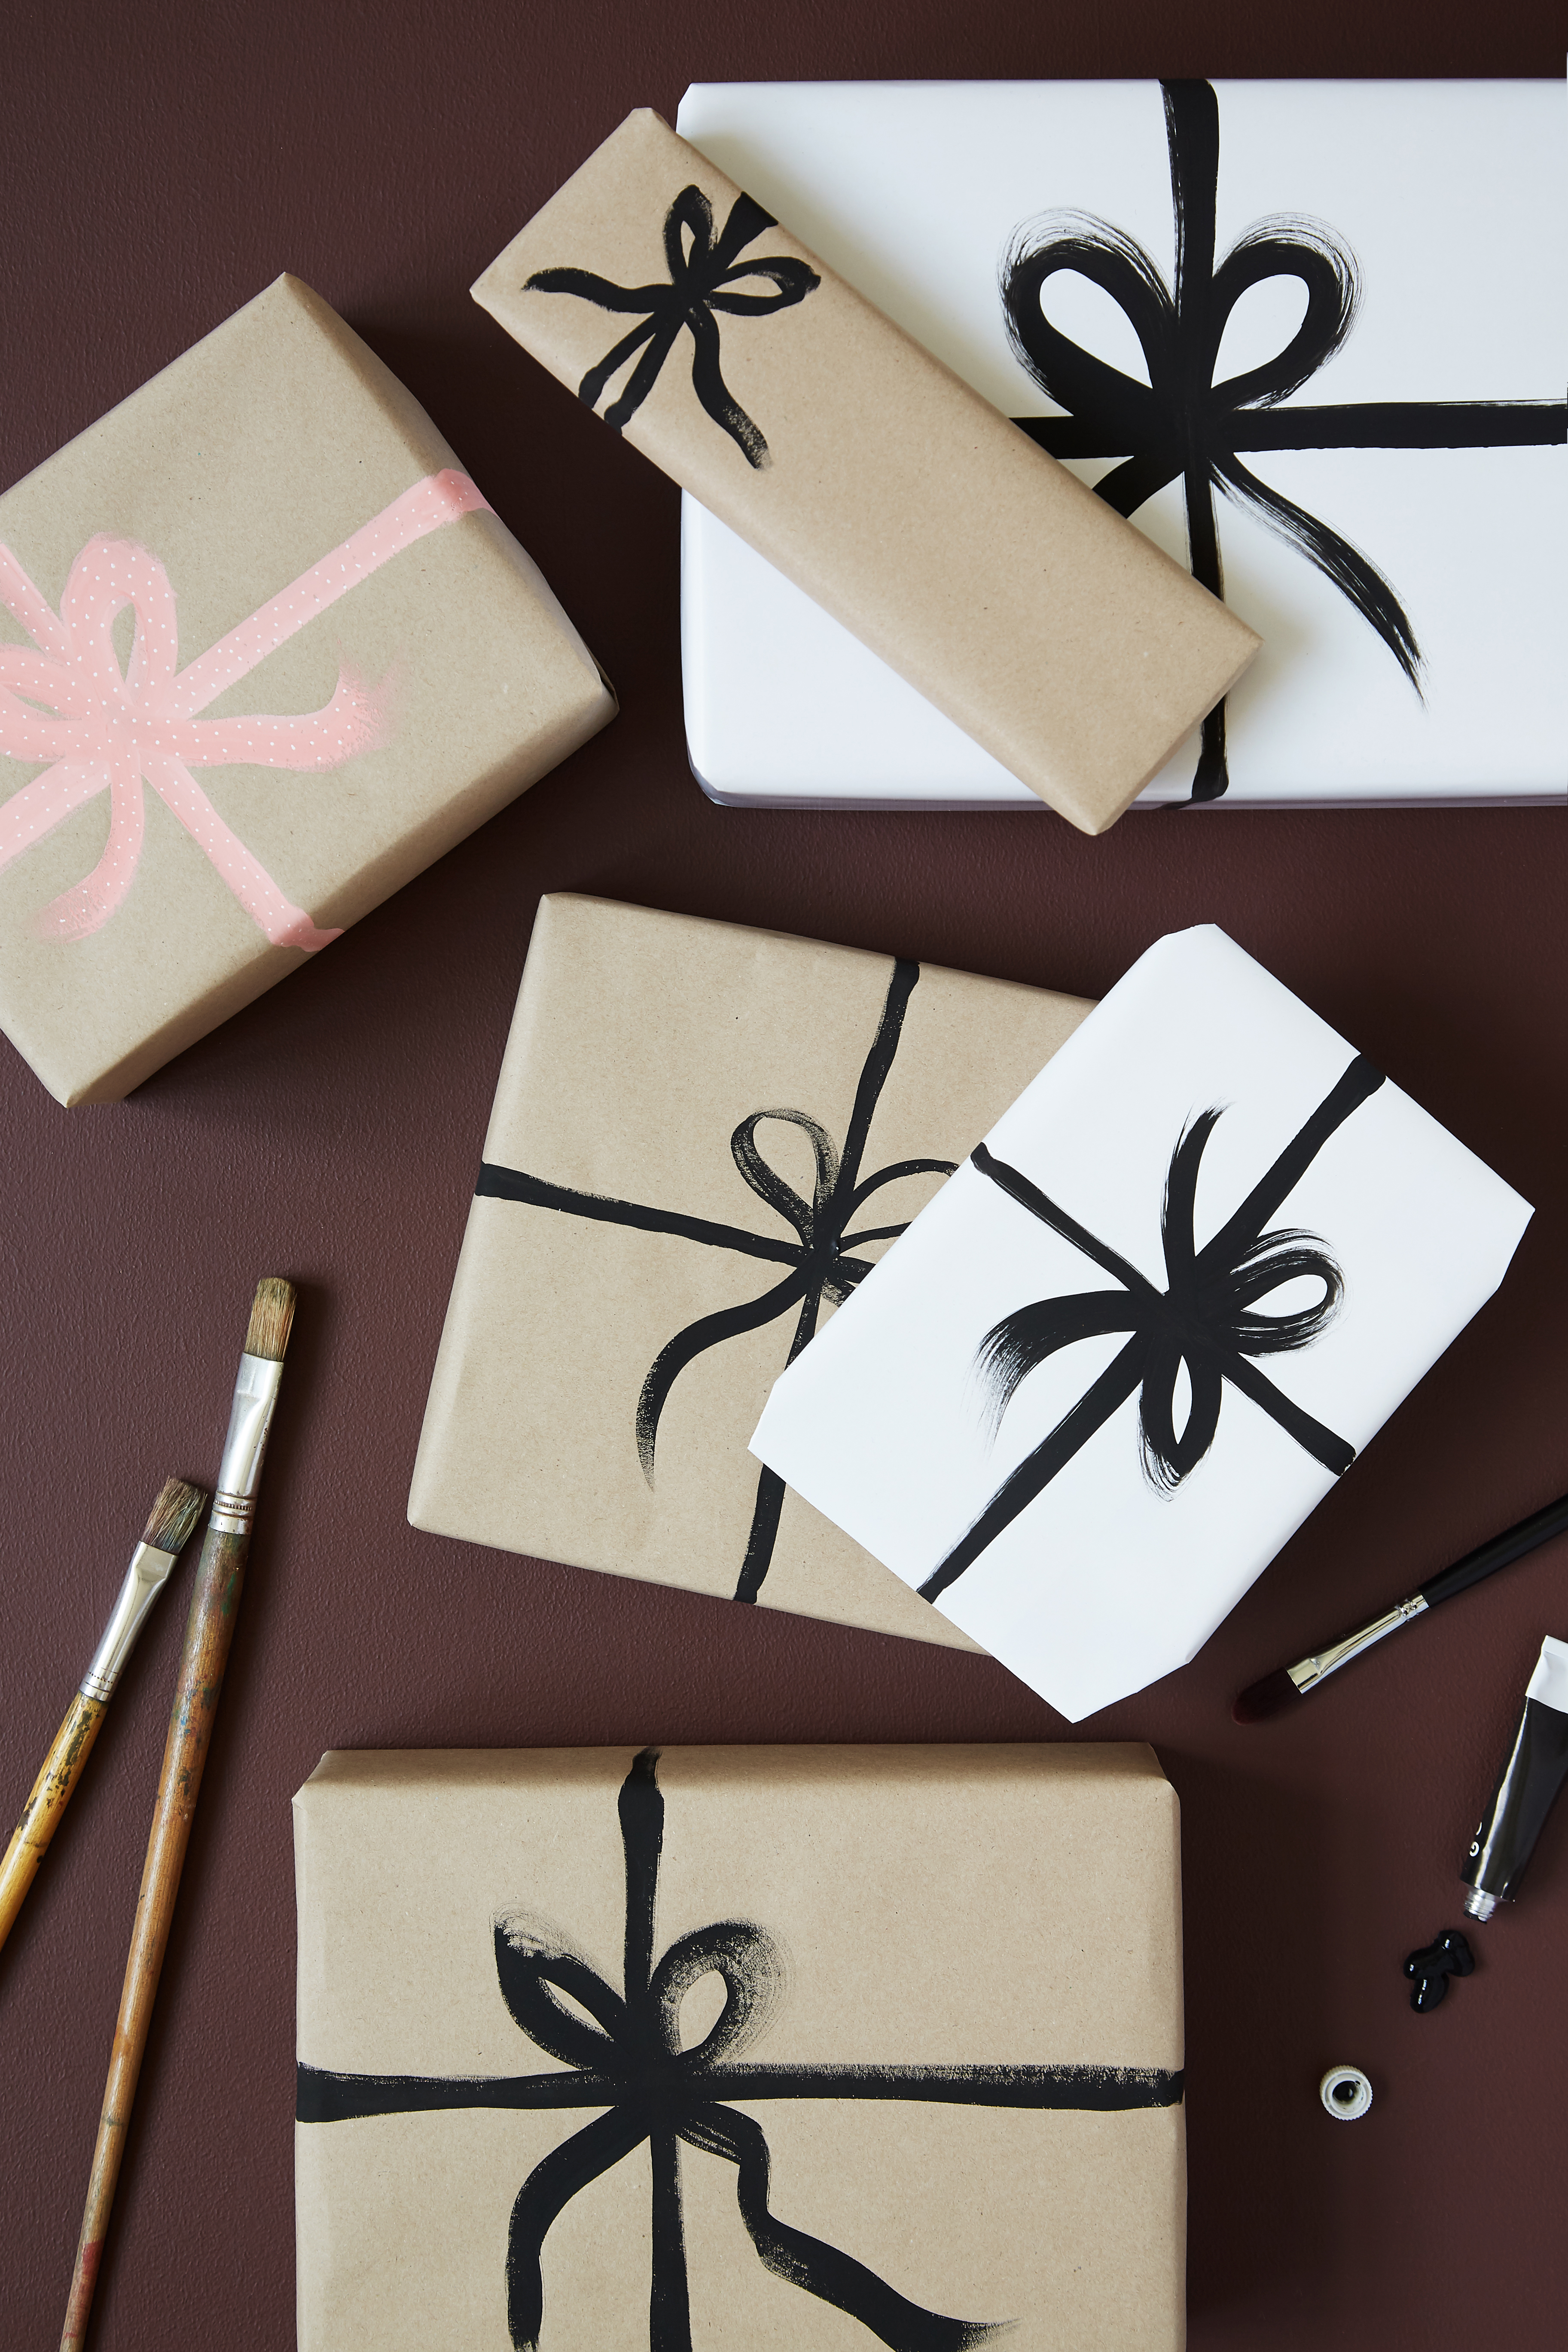 Sæt tabellen op guld charter 5 kreative idéer til, hvordan du kan pakke dine julegaver ind |  Boligmagasinet.dk